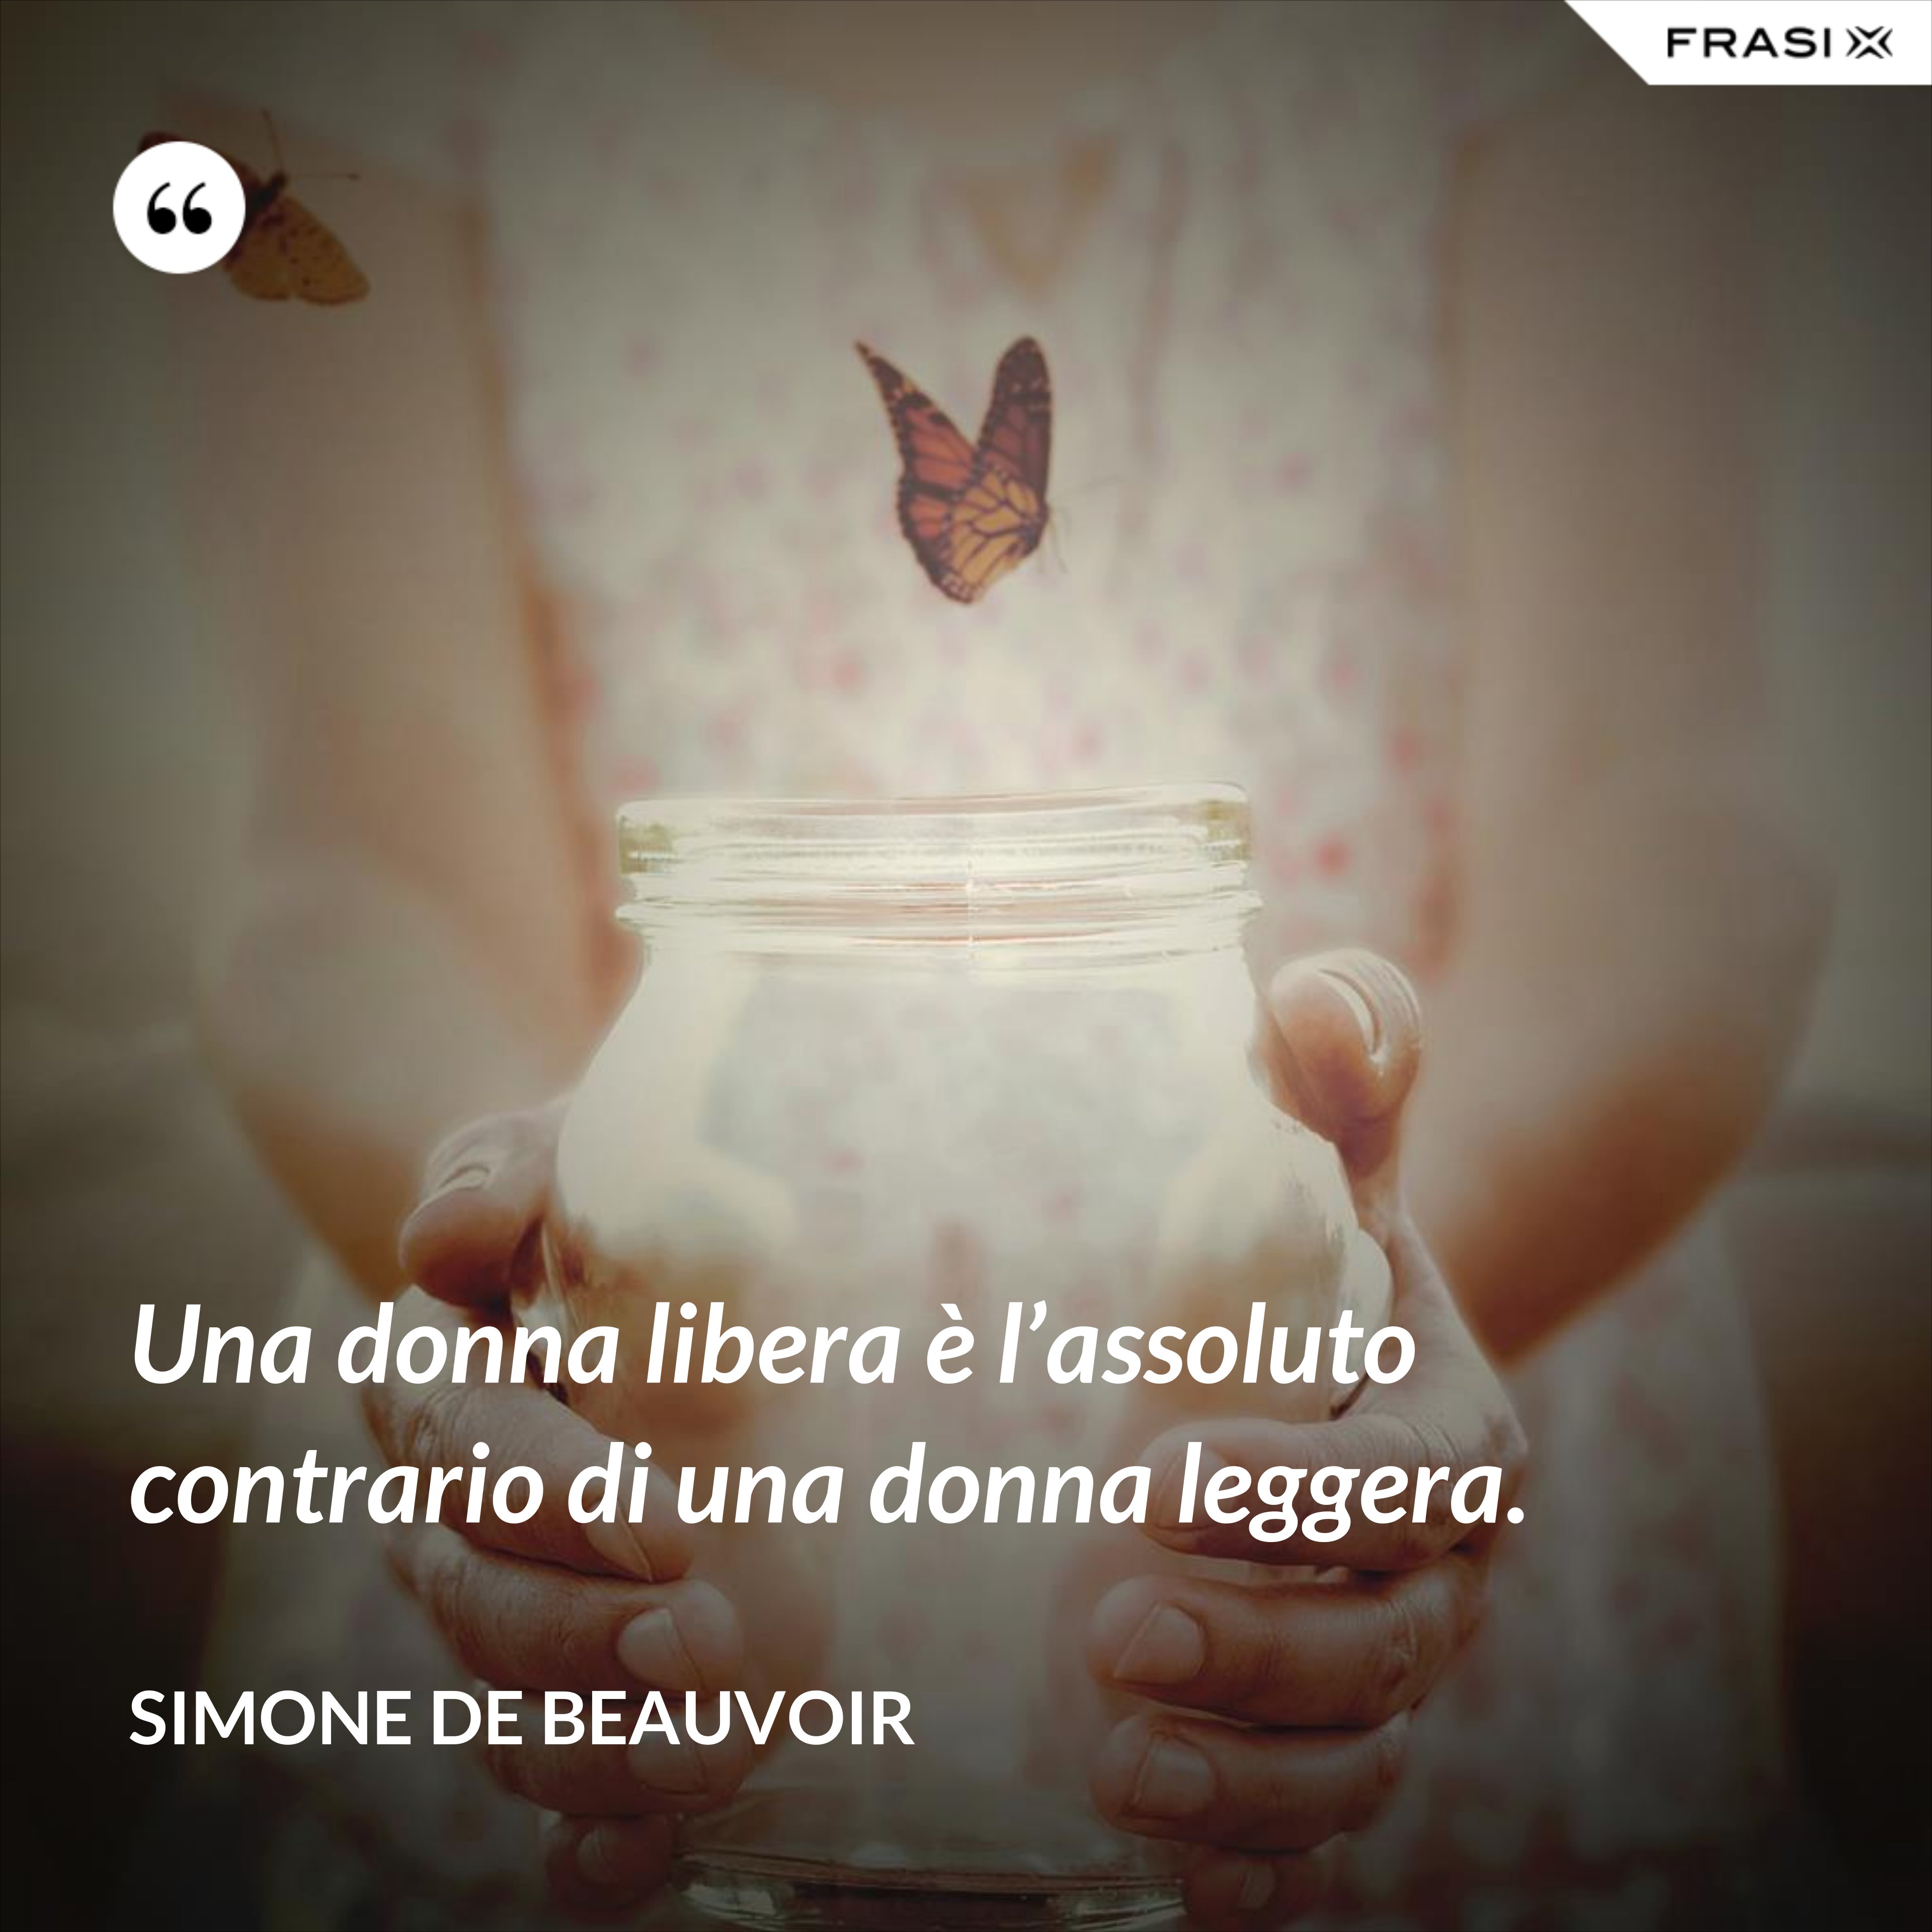 Una donna libera è l’assoluto contrario di una donna leggera. - Simone De Beauvoir